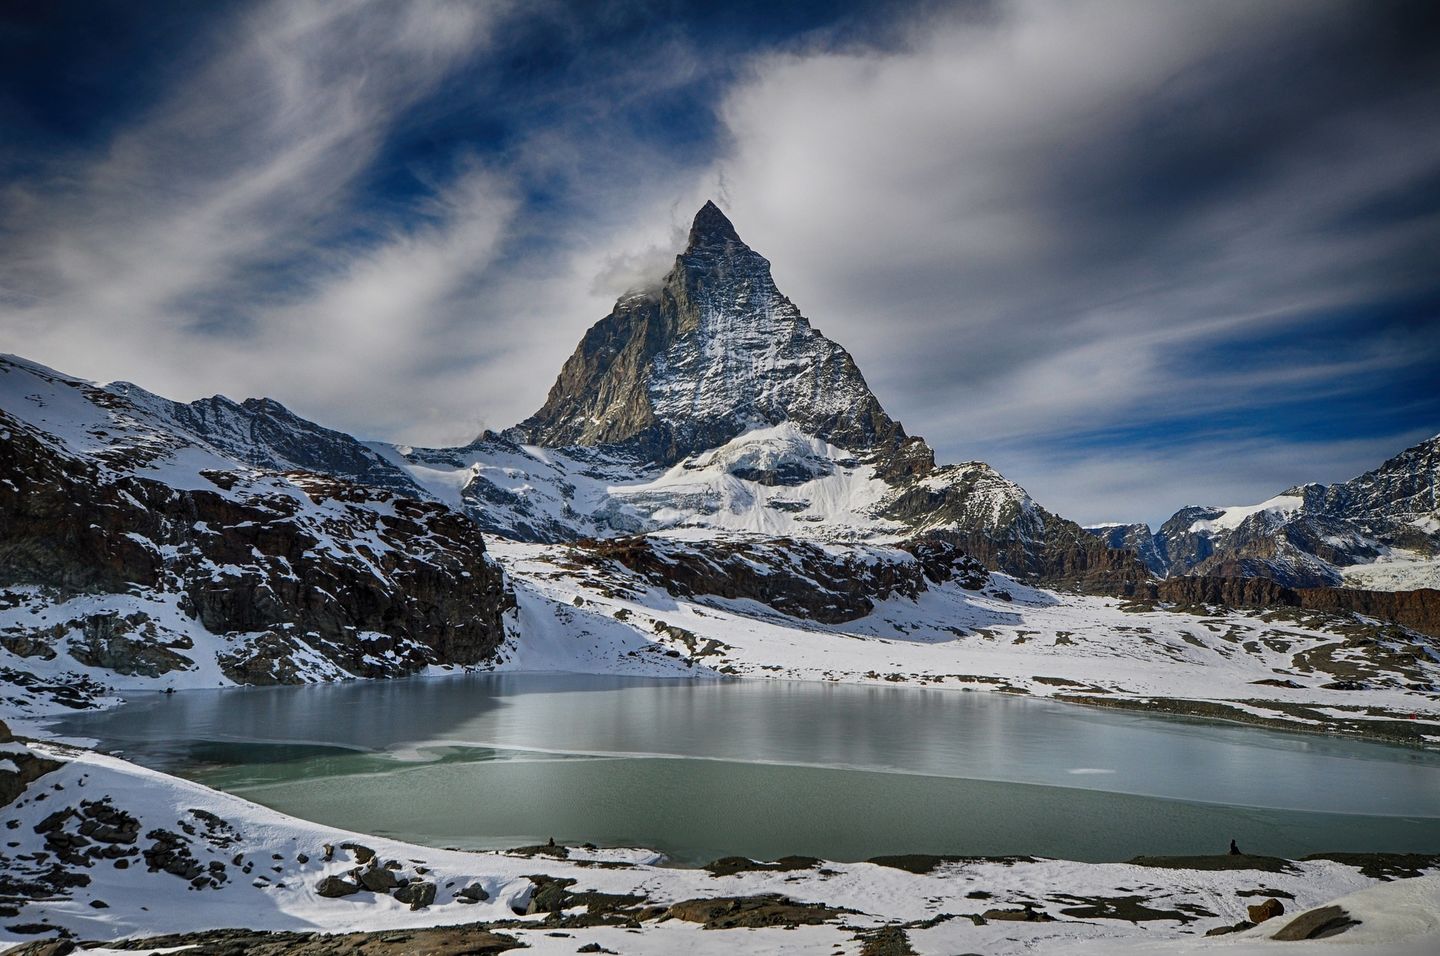 Zermatt-Matterhorn ski resort